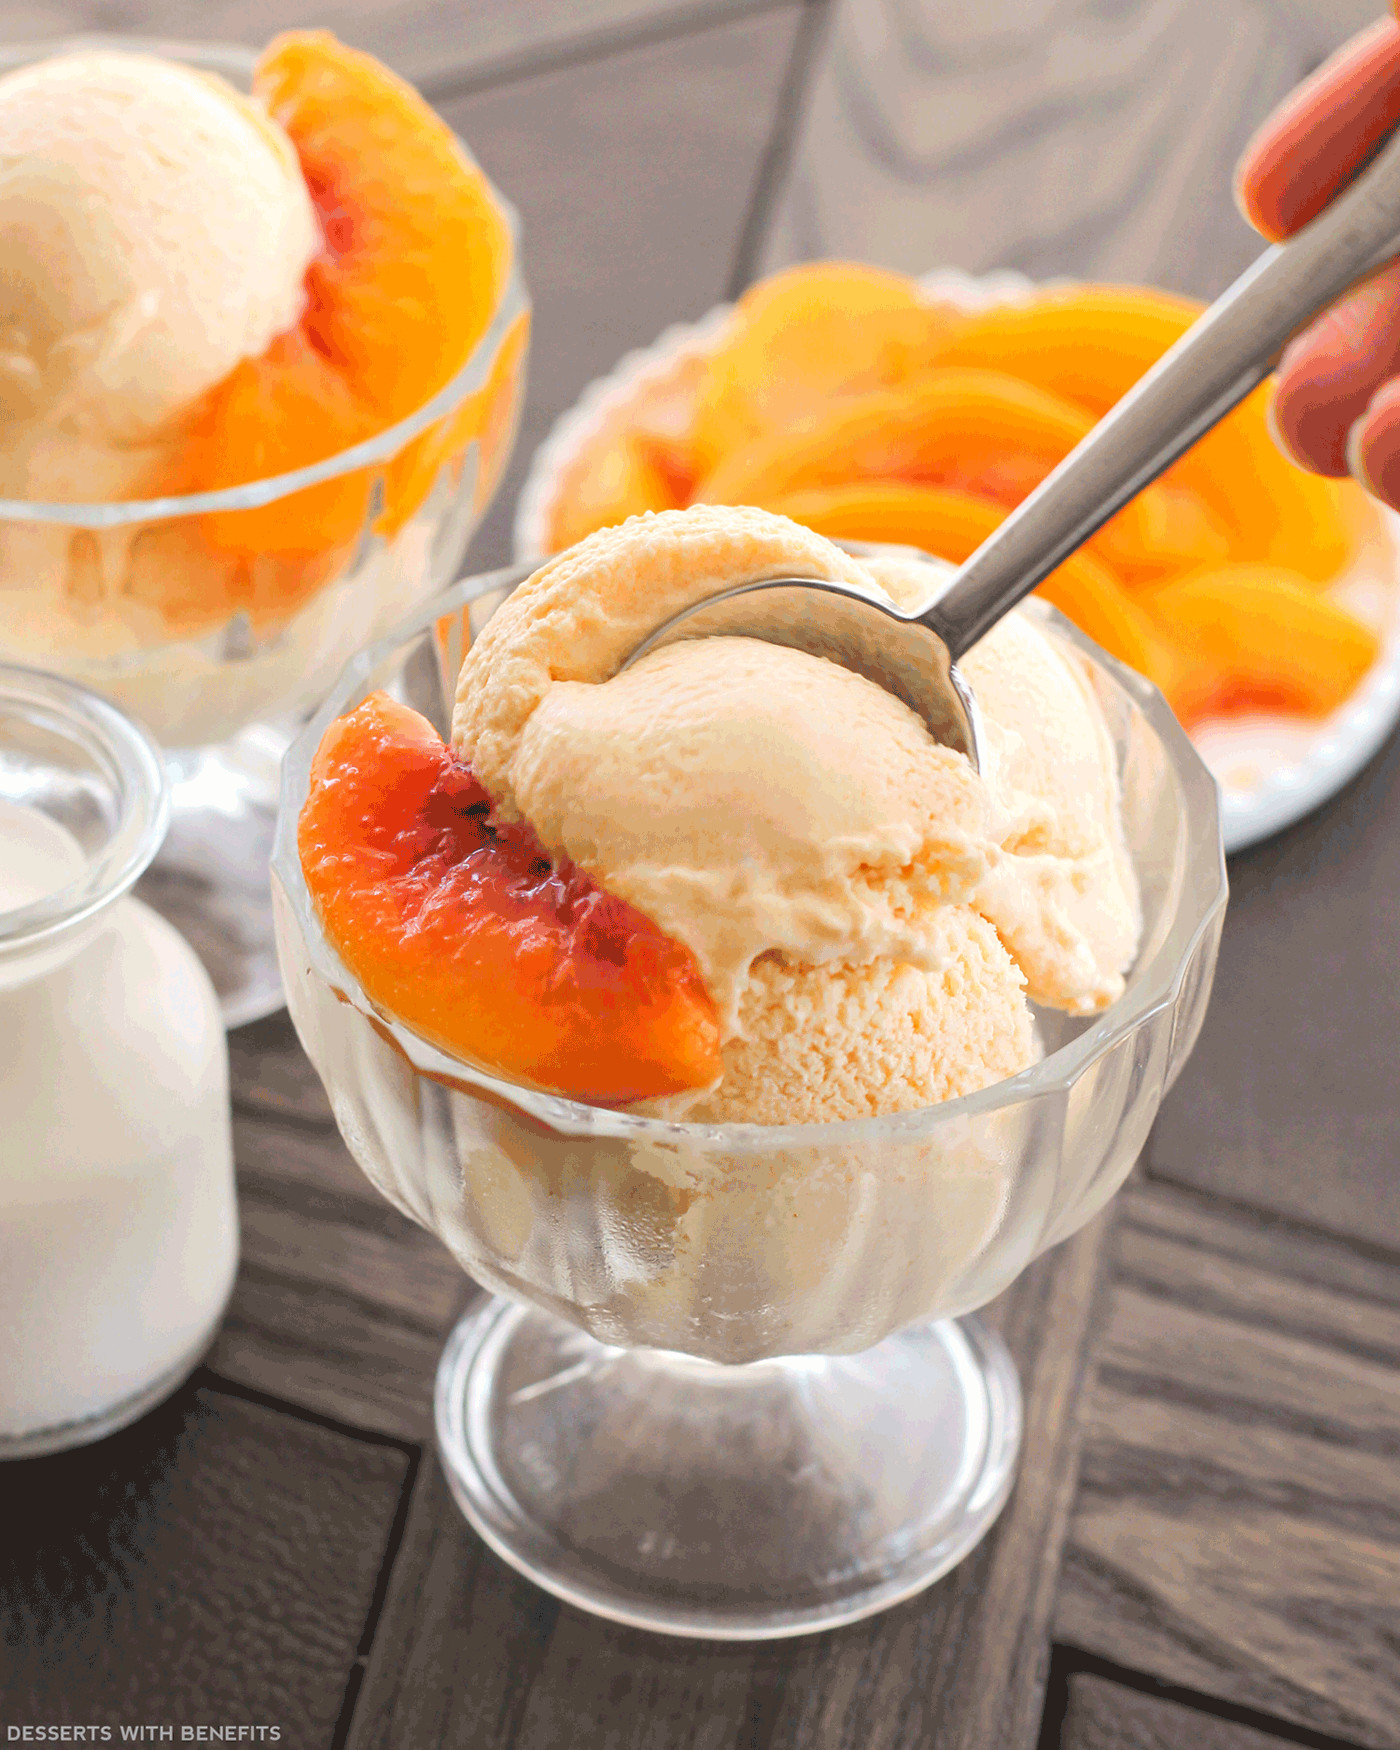 Healthy Peach Dessert Recipes
 Healthy Peaches and Cream Ice Cream Recipe No Sugar Added